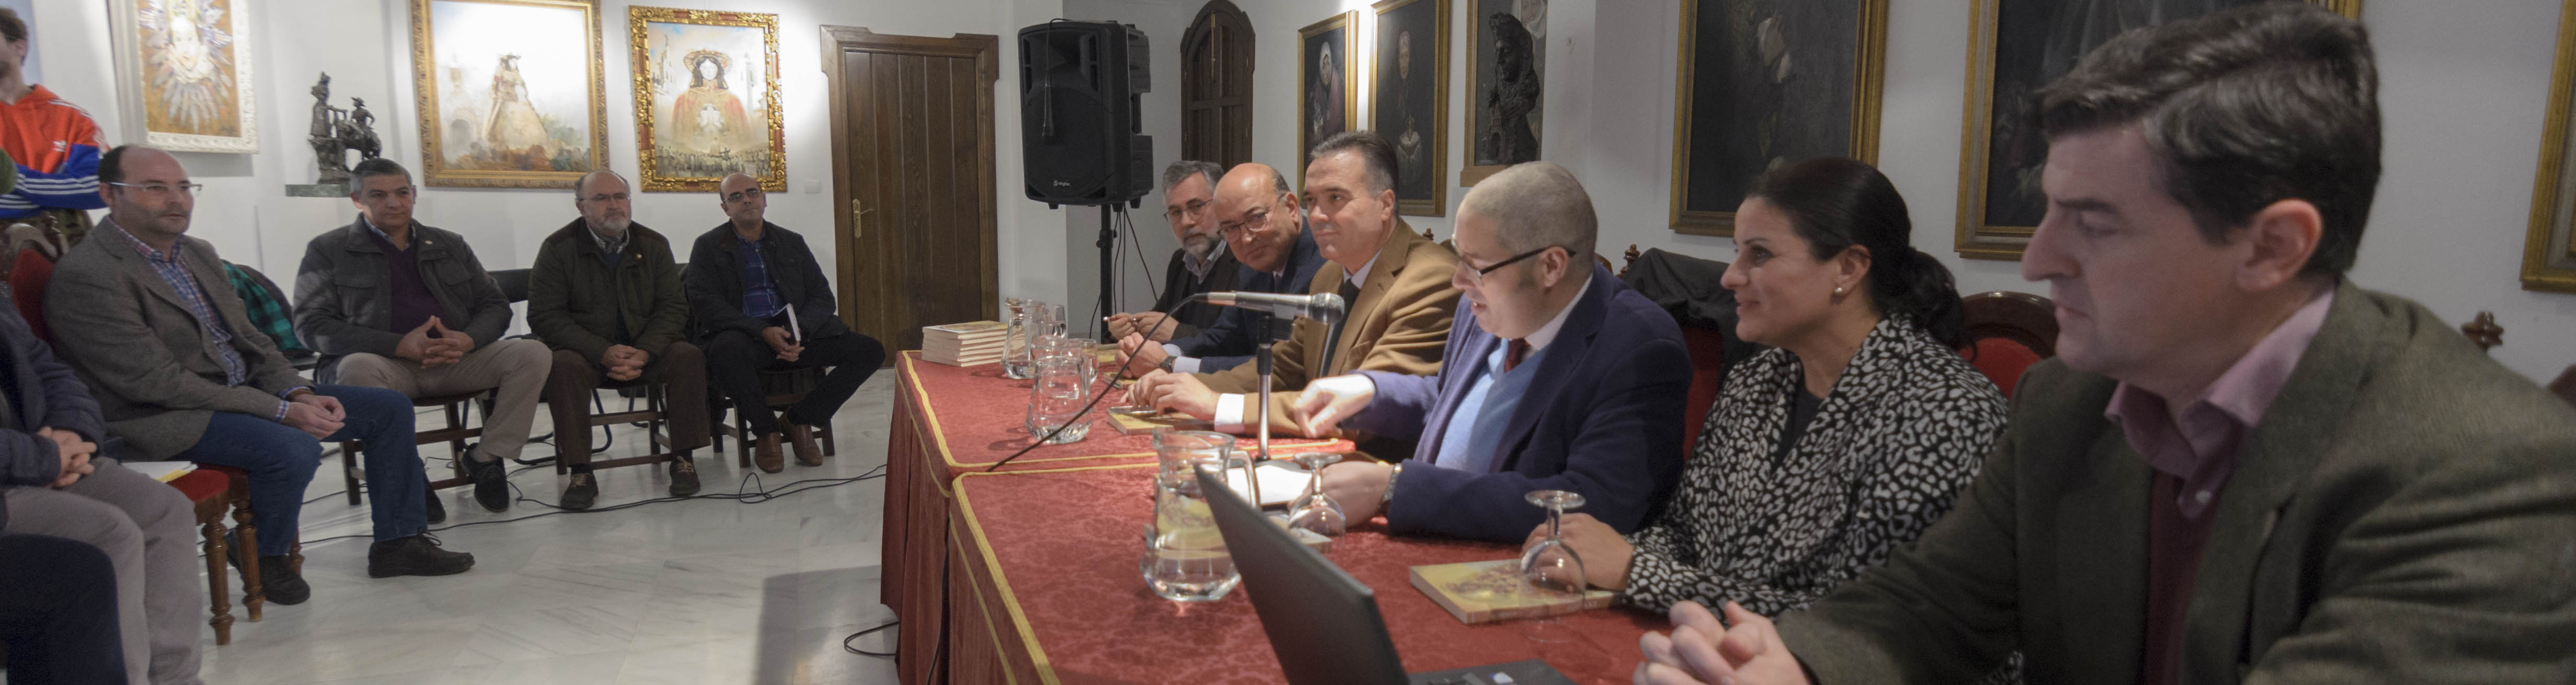 Juan Ignacio Reales - tercero por la derecha -, presidente de la Hermandad Matriz presenta el sexto número de la revista Exvoto